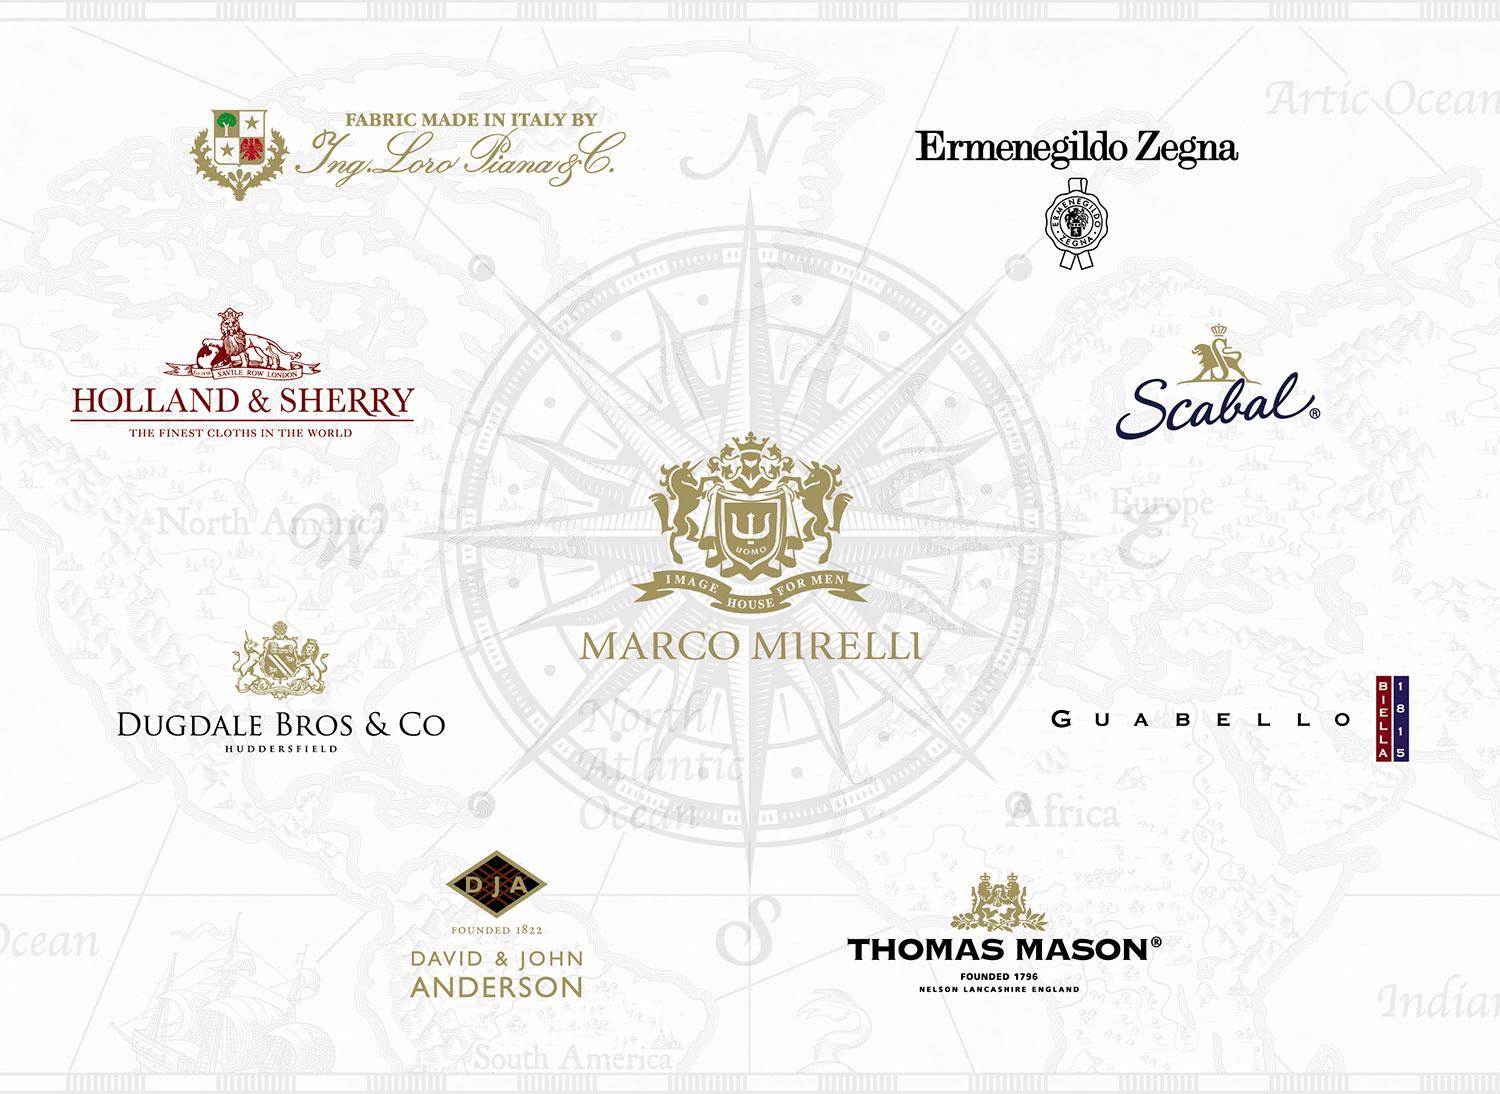 Marco Mirelli spolupracuje s krajčírskymi firmami so svetovým renomé. Medzi jeho spolupracovníkov patria také značky ako Ermenegildo Zegna, Guabello alebo Thomas Mason.